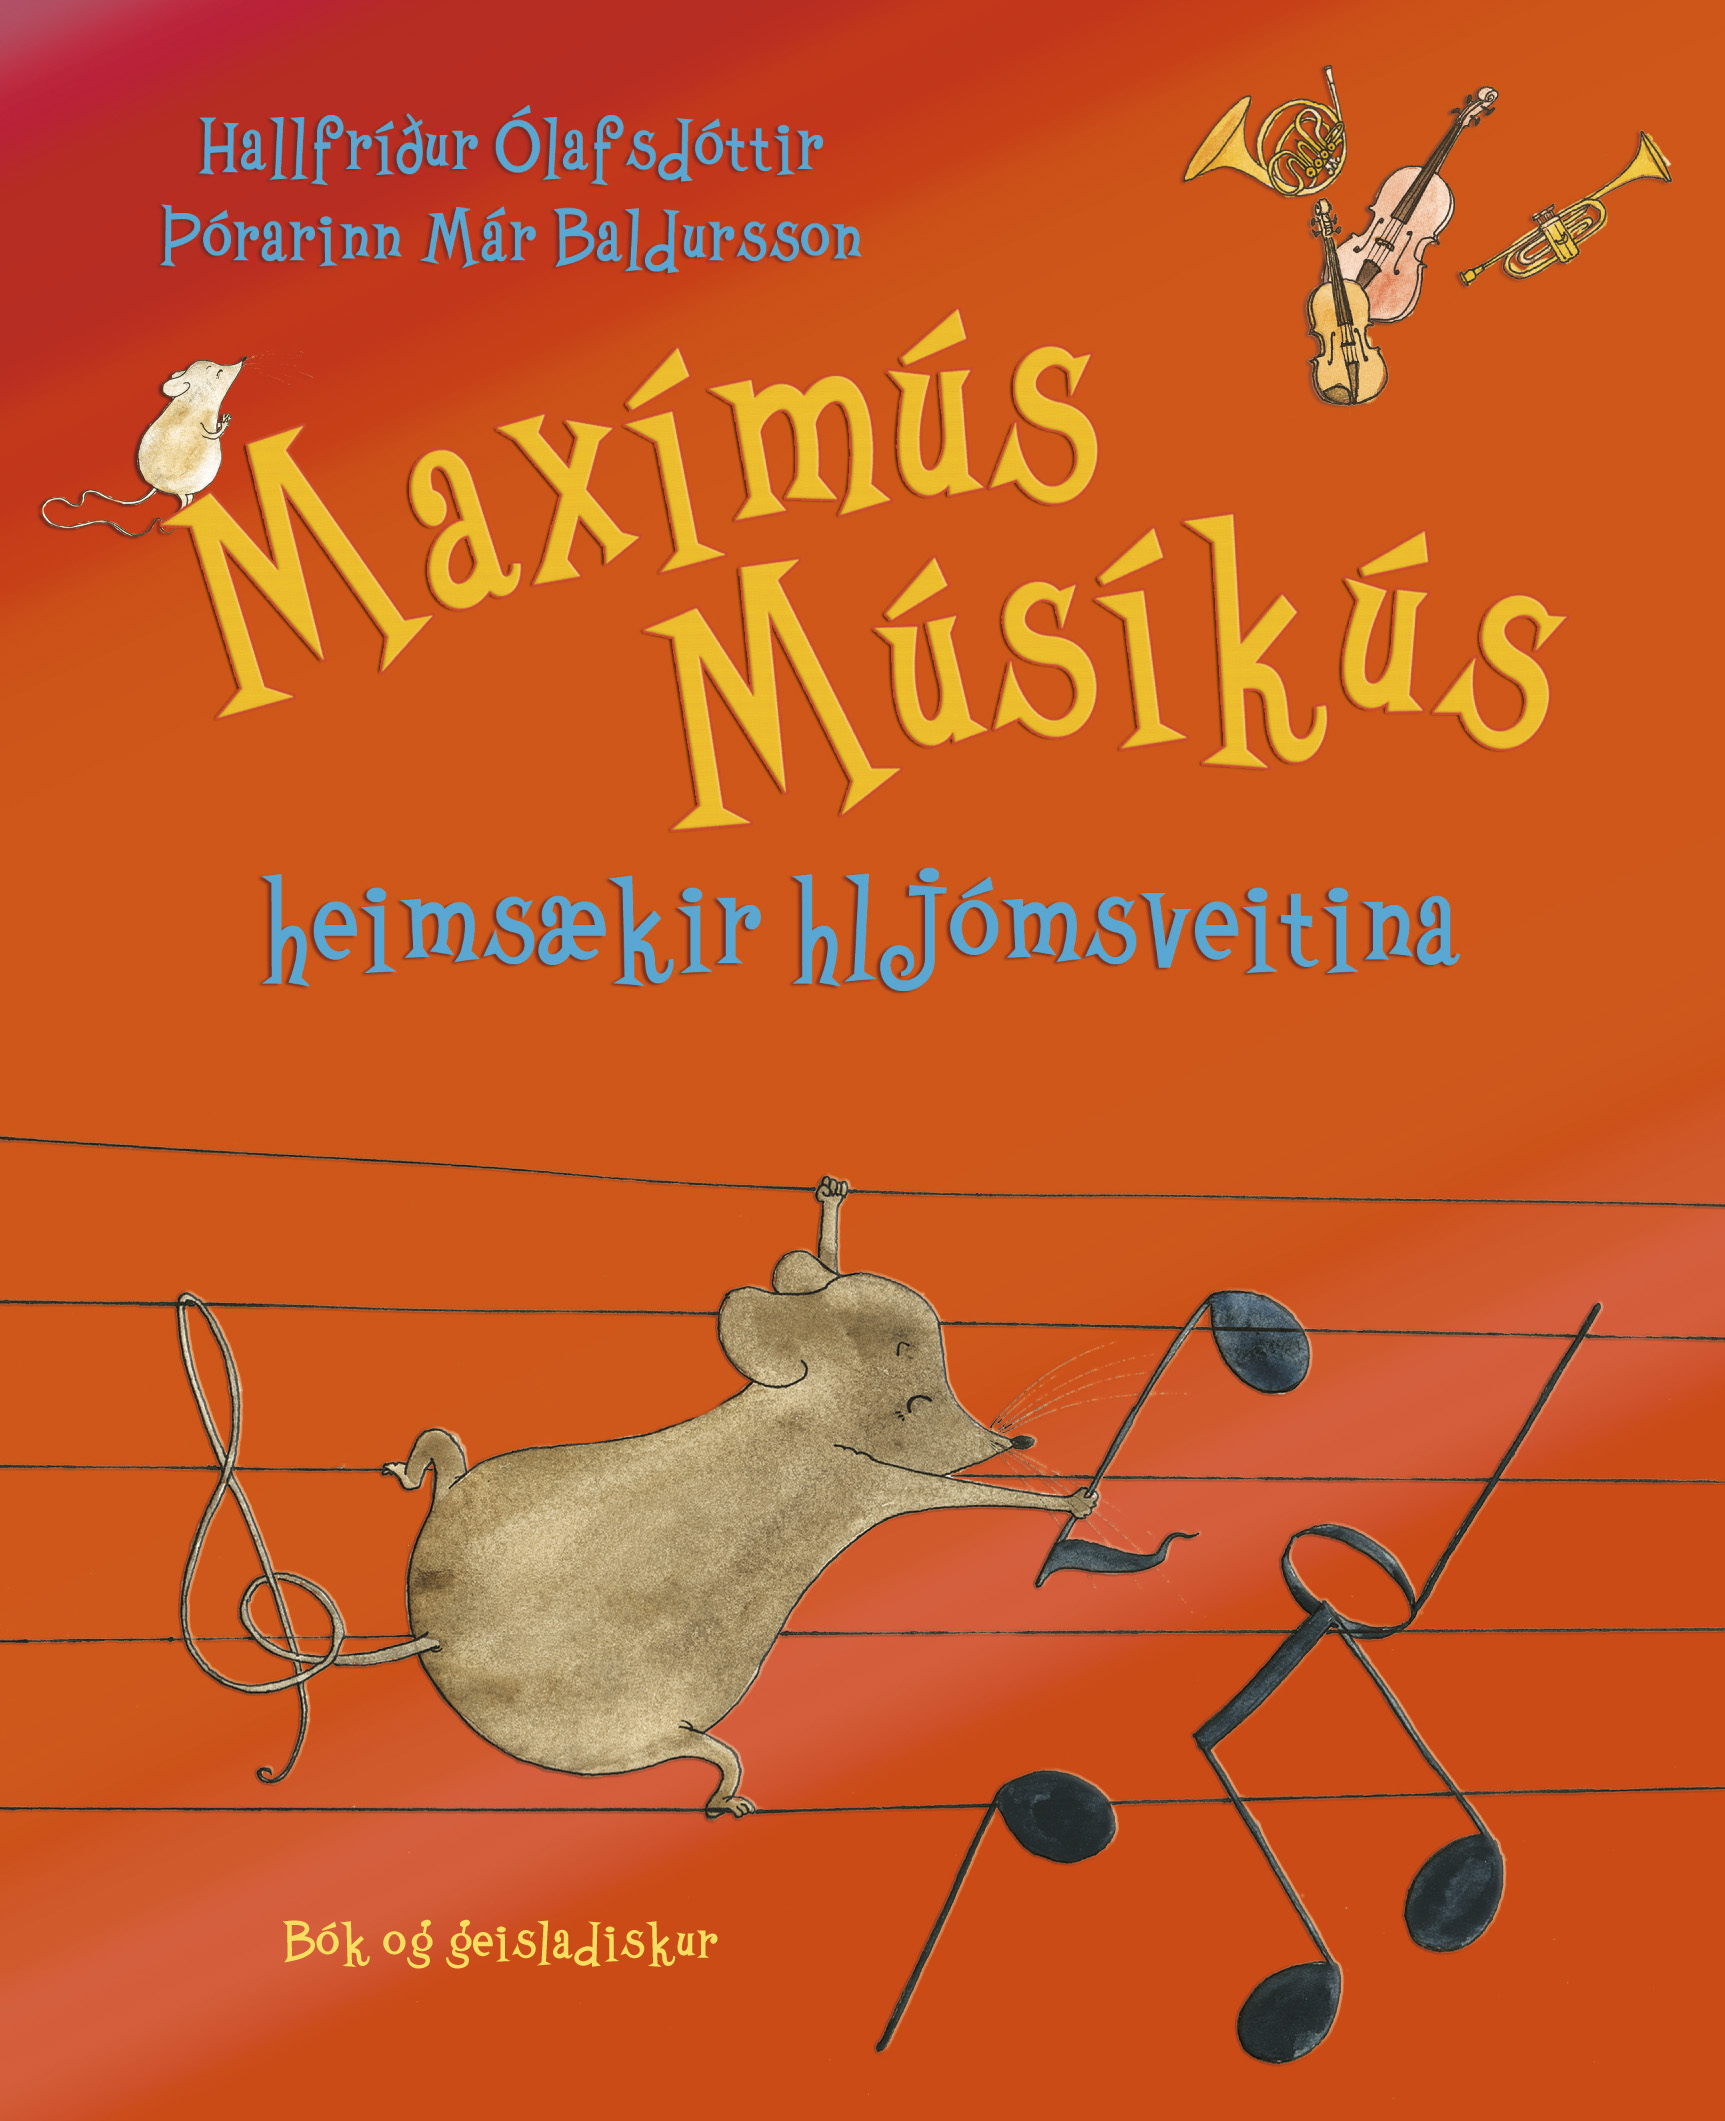 Maximus Musicus Explores Iceland (2018)